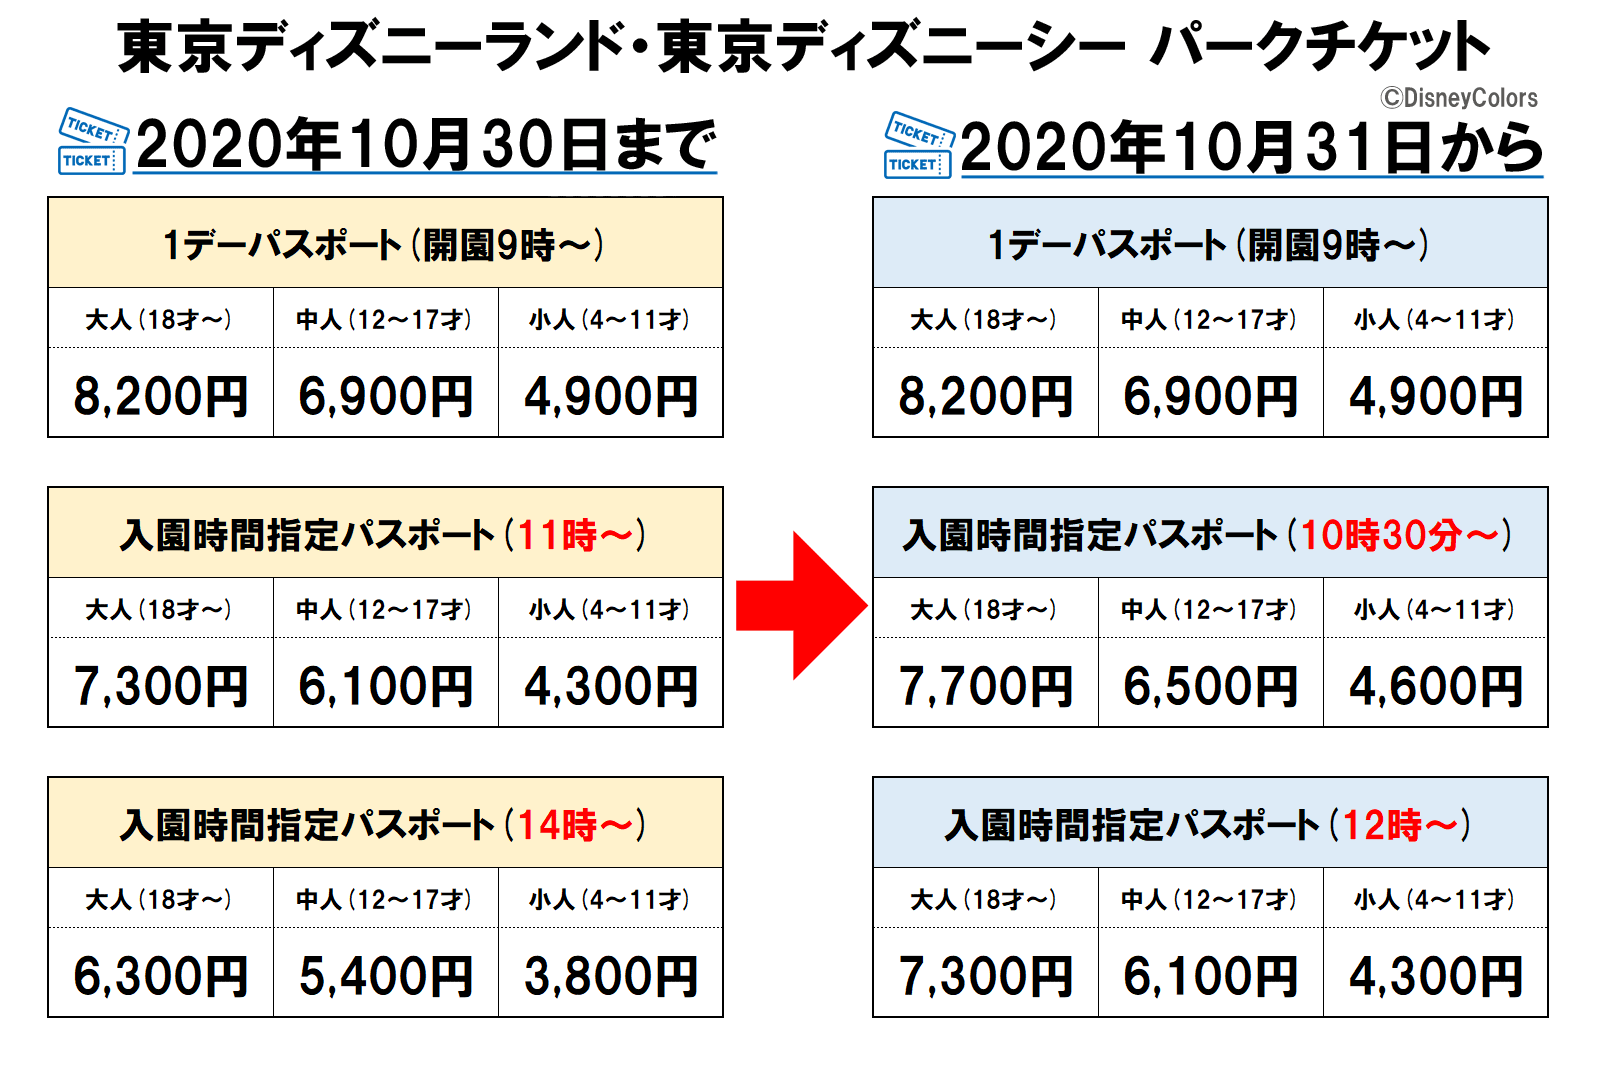 東京ディズニーランド 東京ディズニーシー パークチケット 時間指定 変更